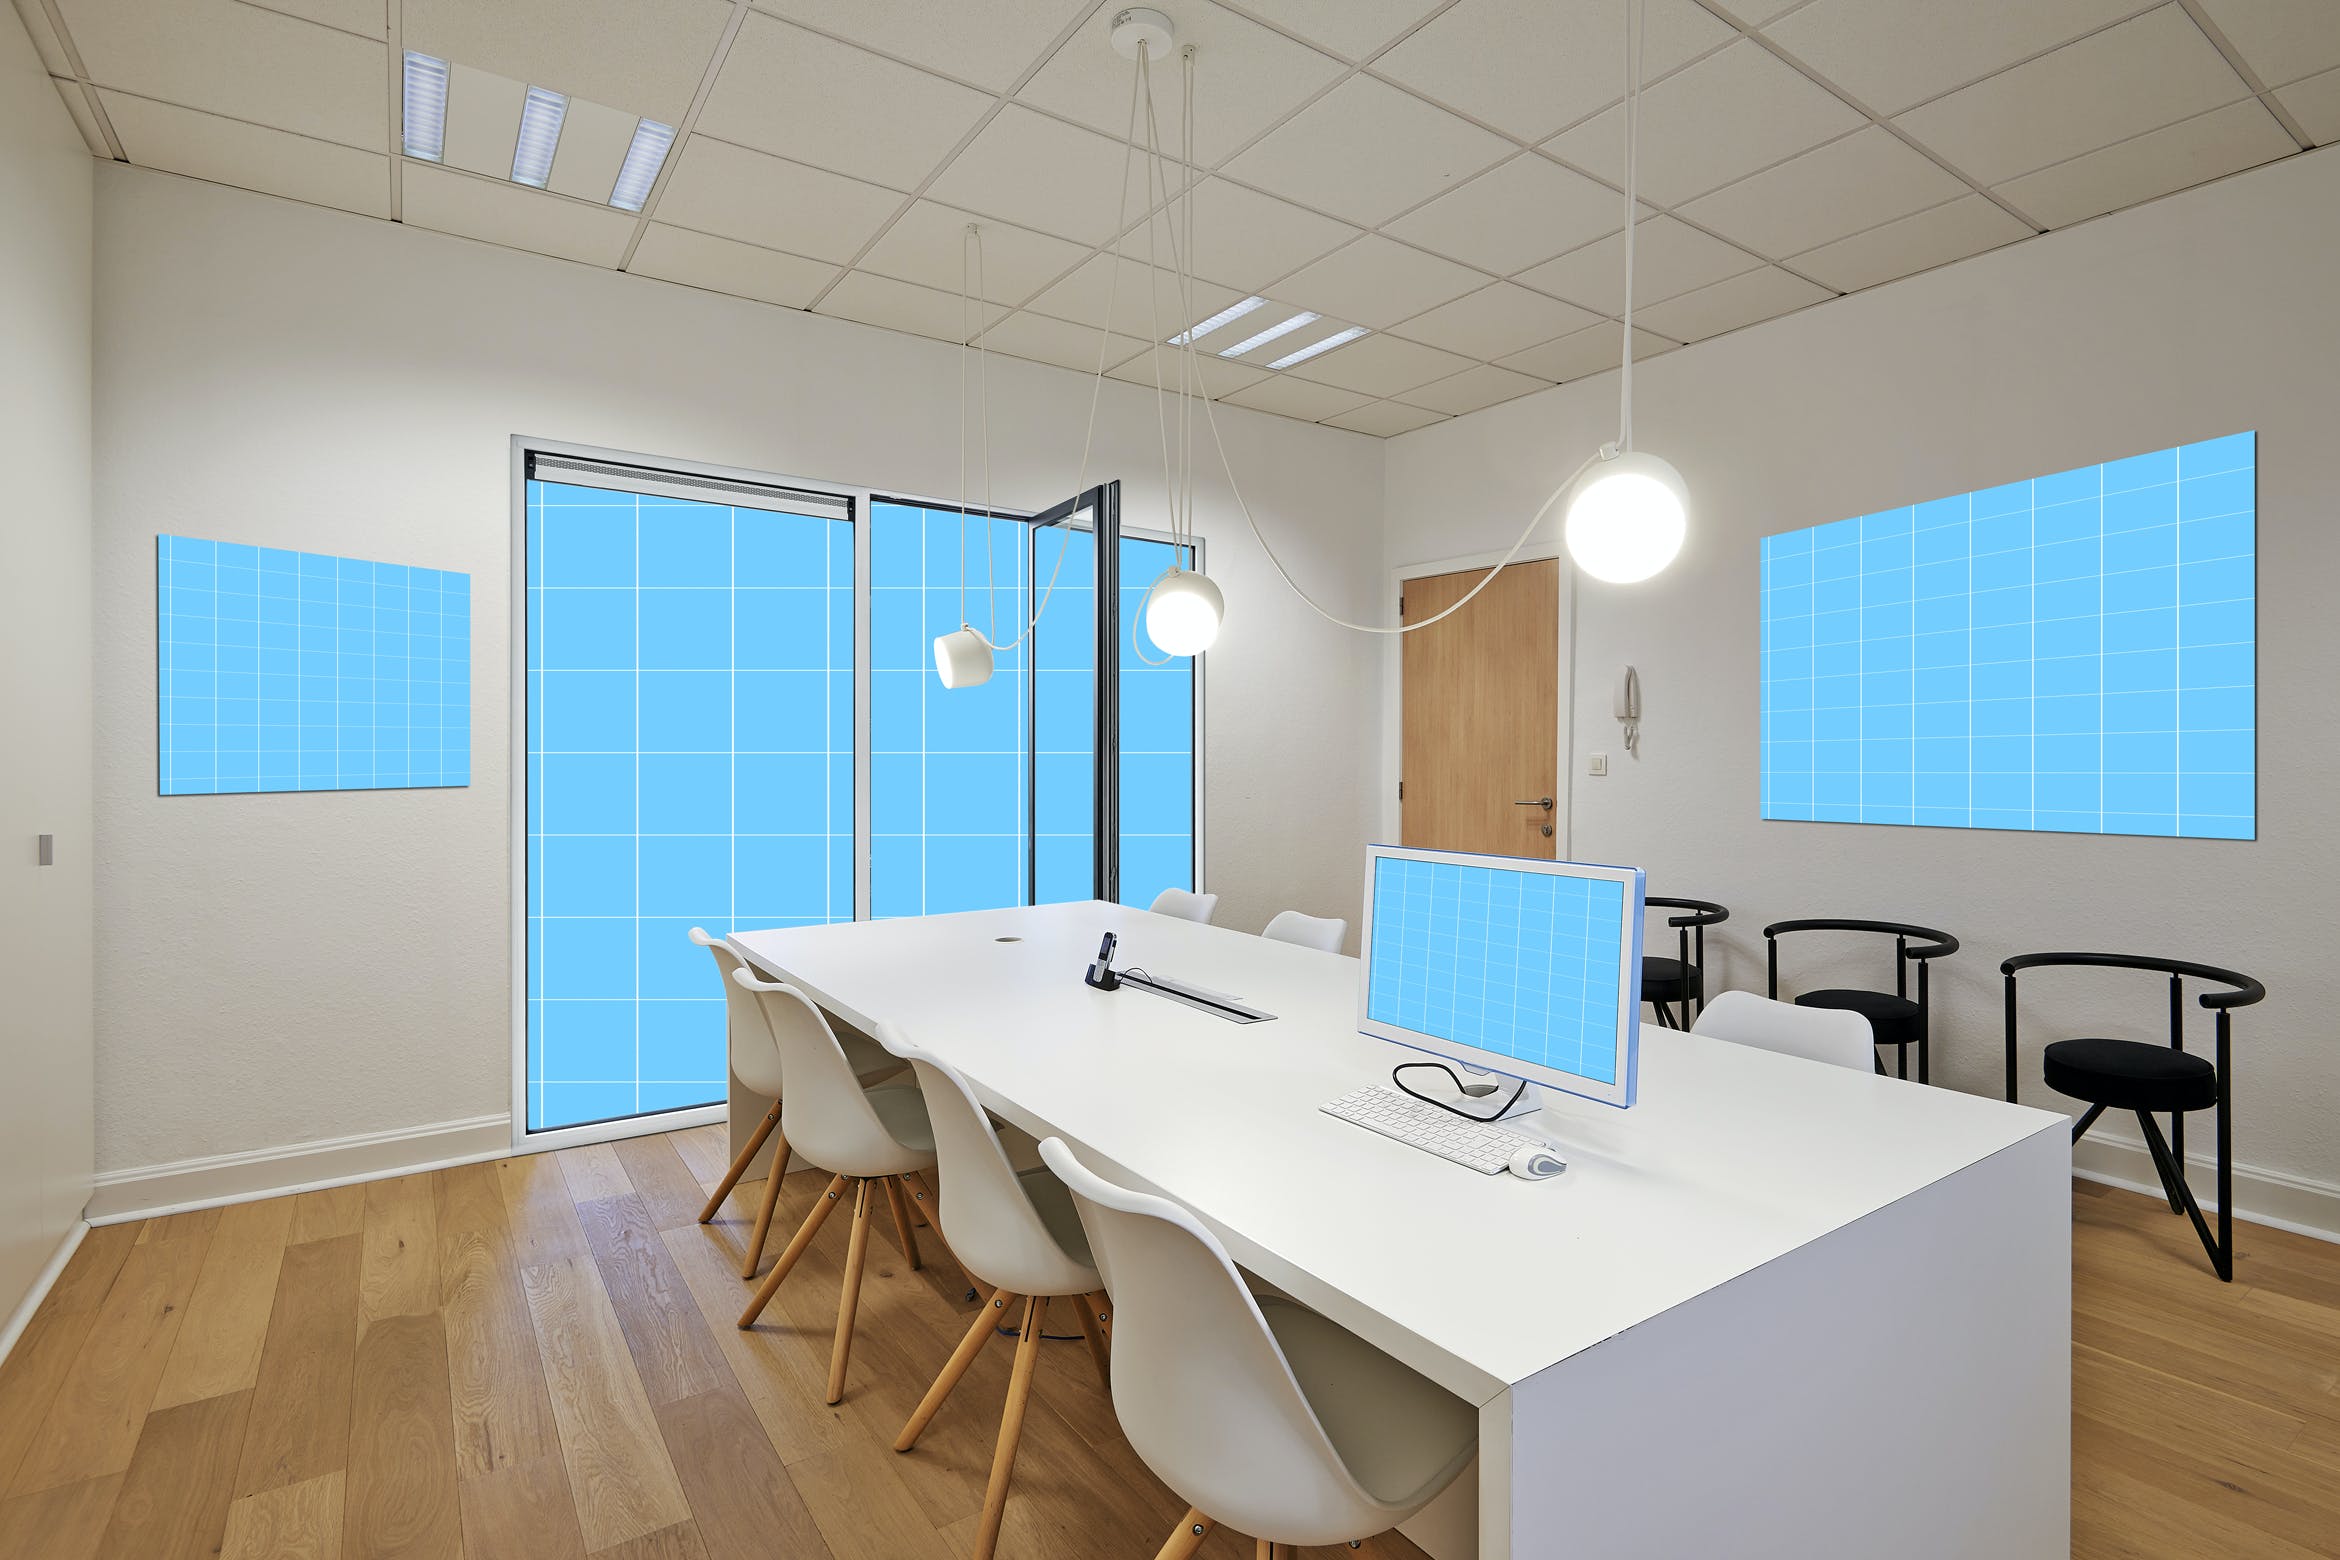 办公室装饰设计效果图样机模板 Office_Room-Mockup设计素材模板